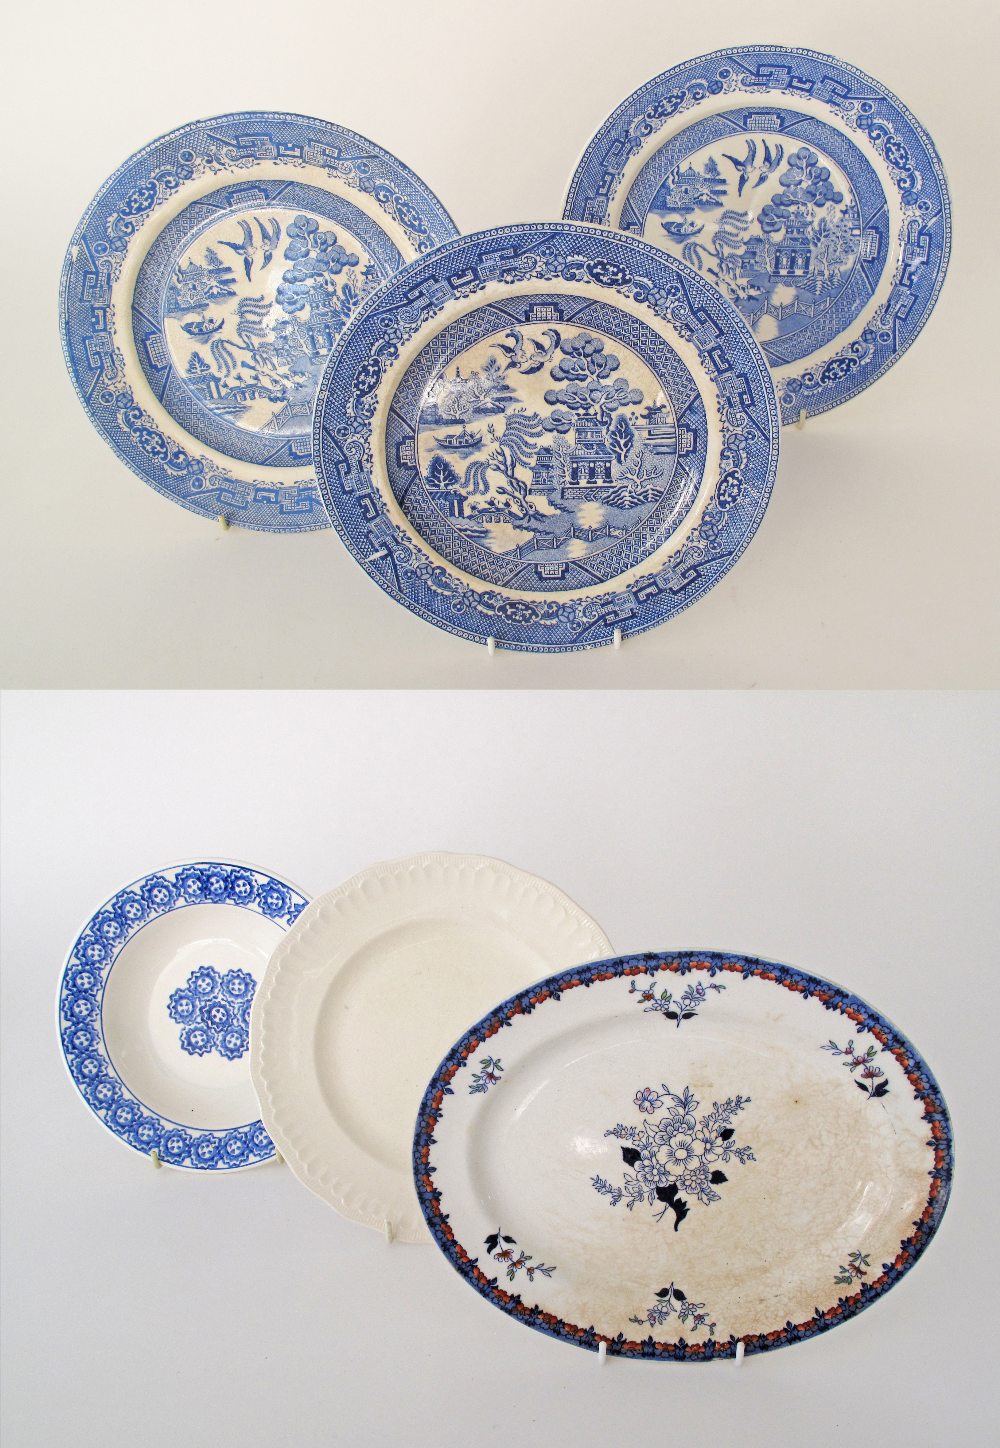 Six English & Italian ceramic dishes c19th century. (6)